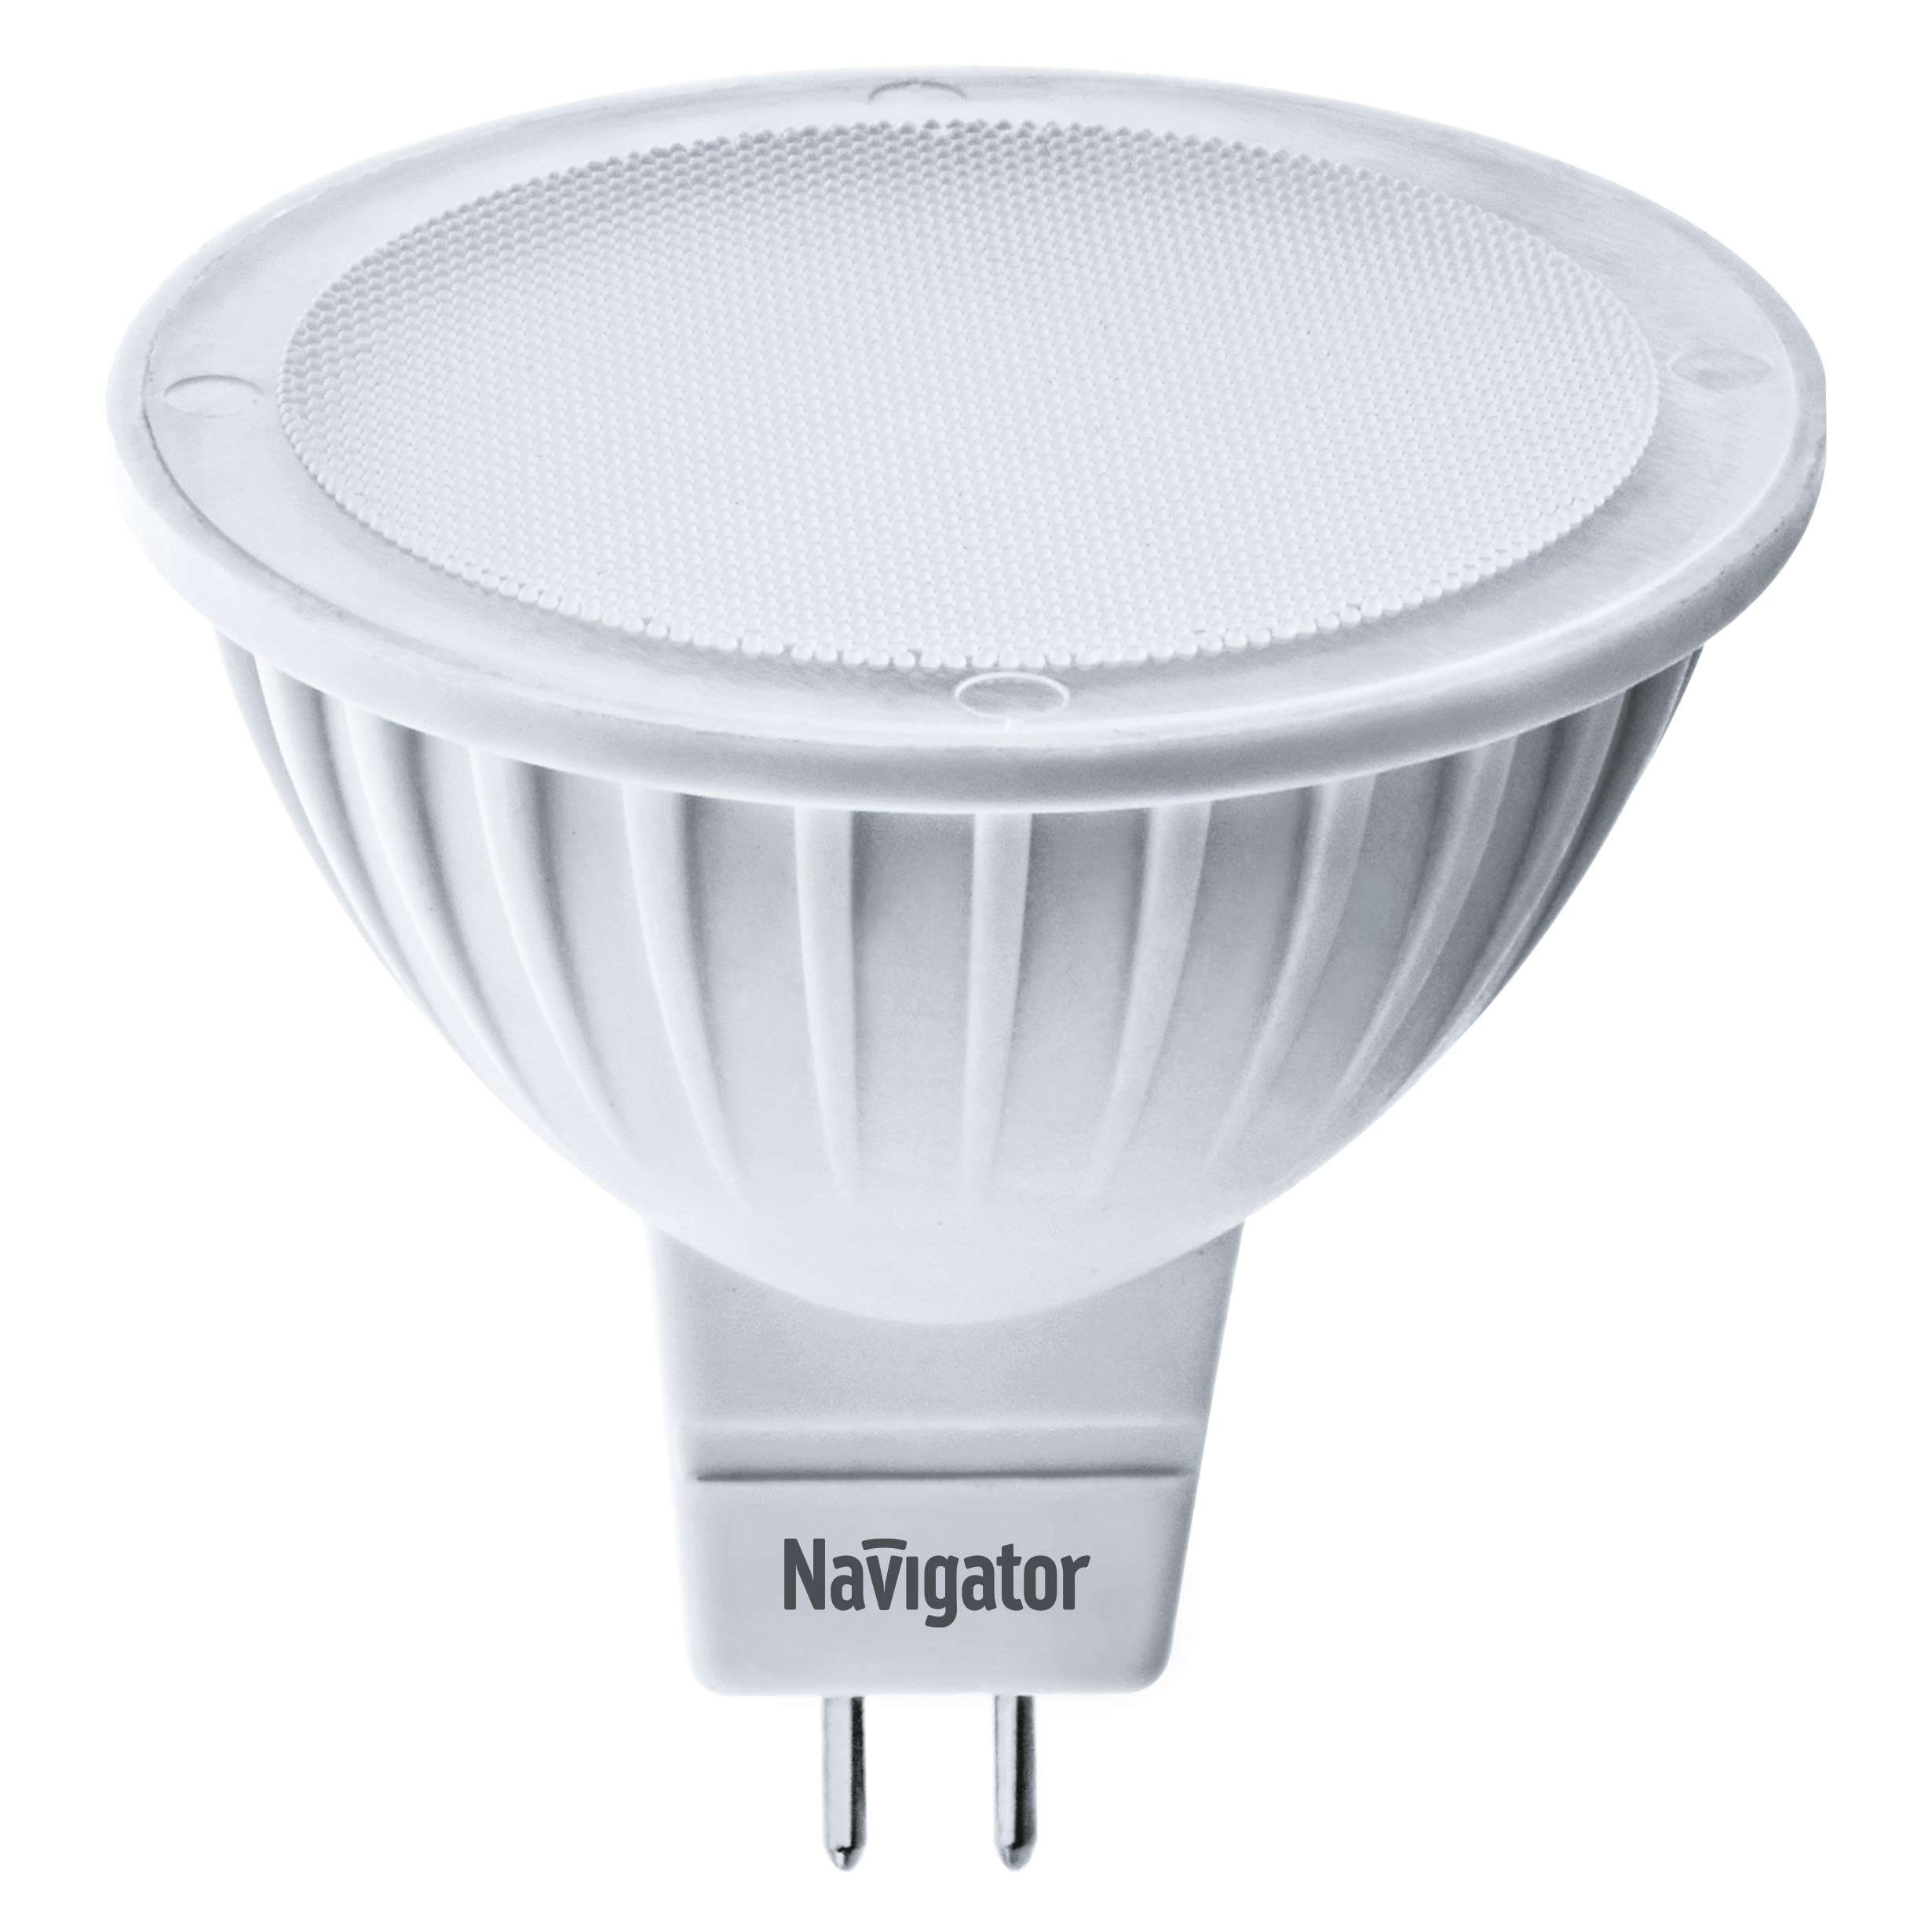 Лампа светодиодная Navigator MR16 5Вт 230В цоколь GU5.3 (холодный свет) лампа светодиодная navigator зеркальная r50 5вт цоколь e14 холодный свет